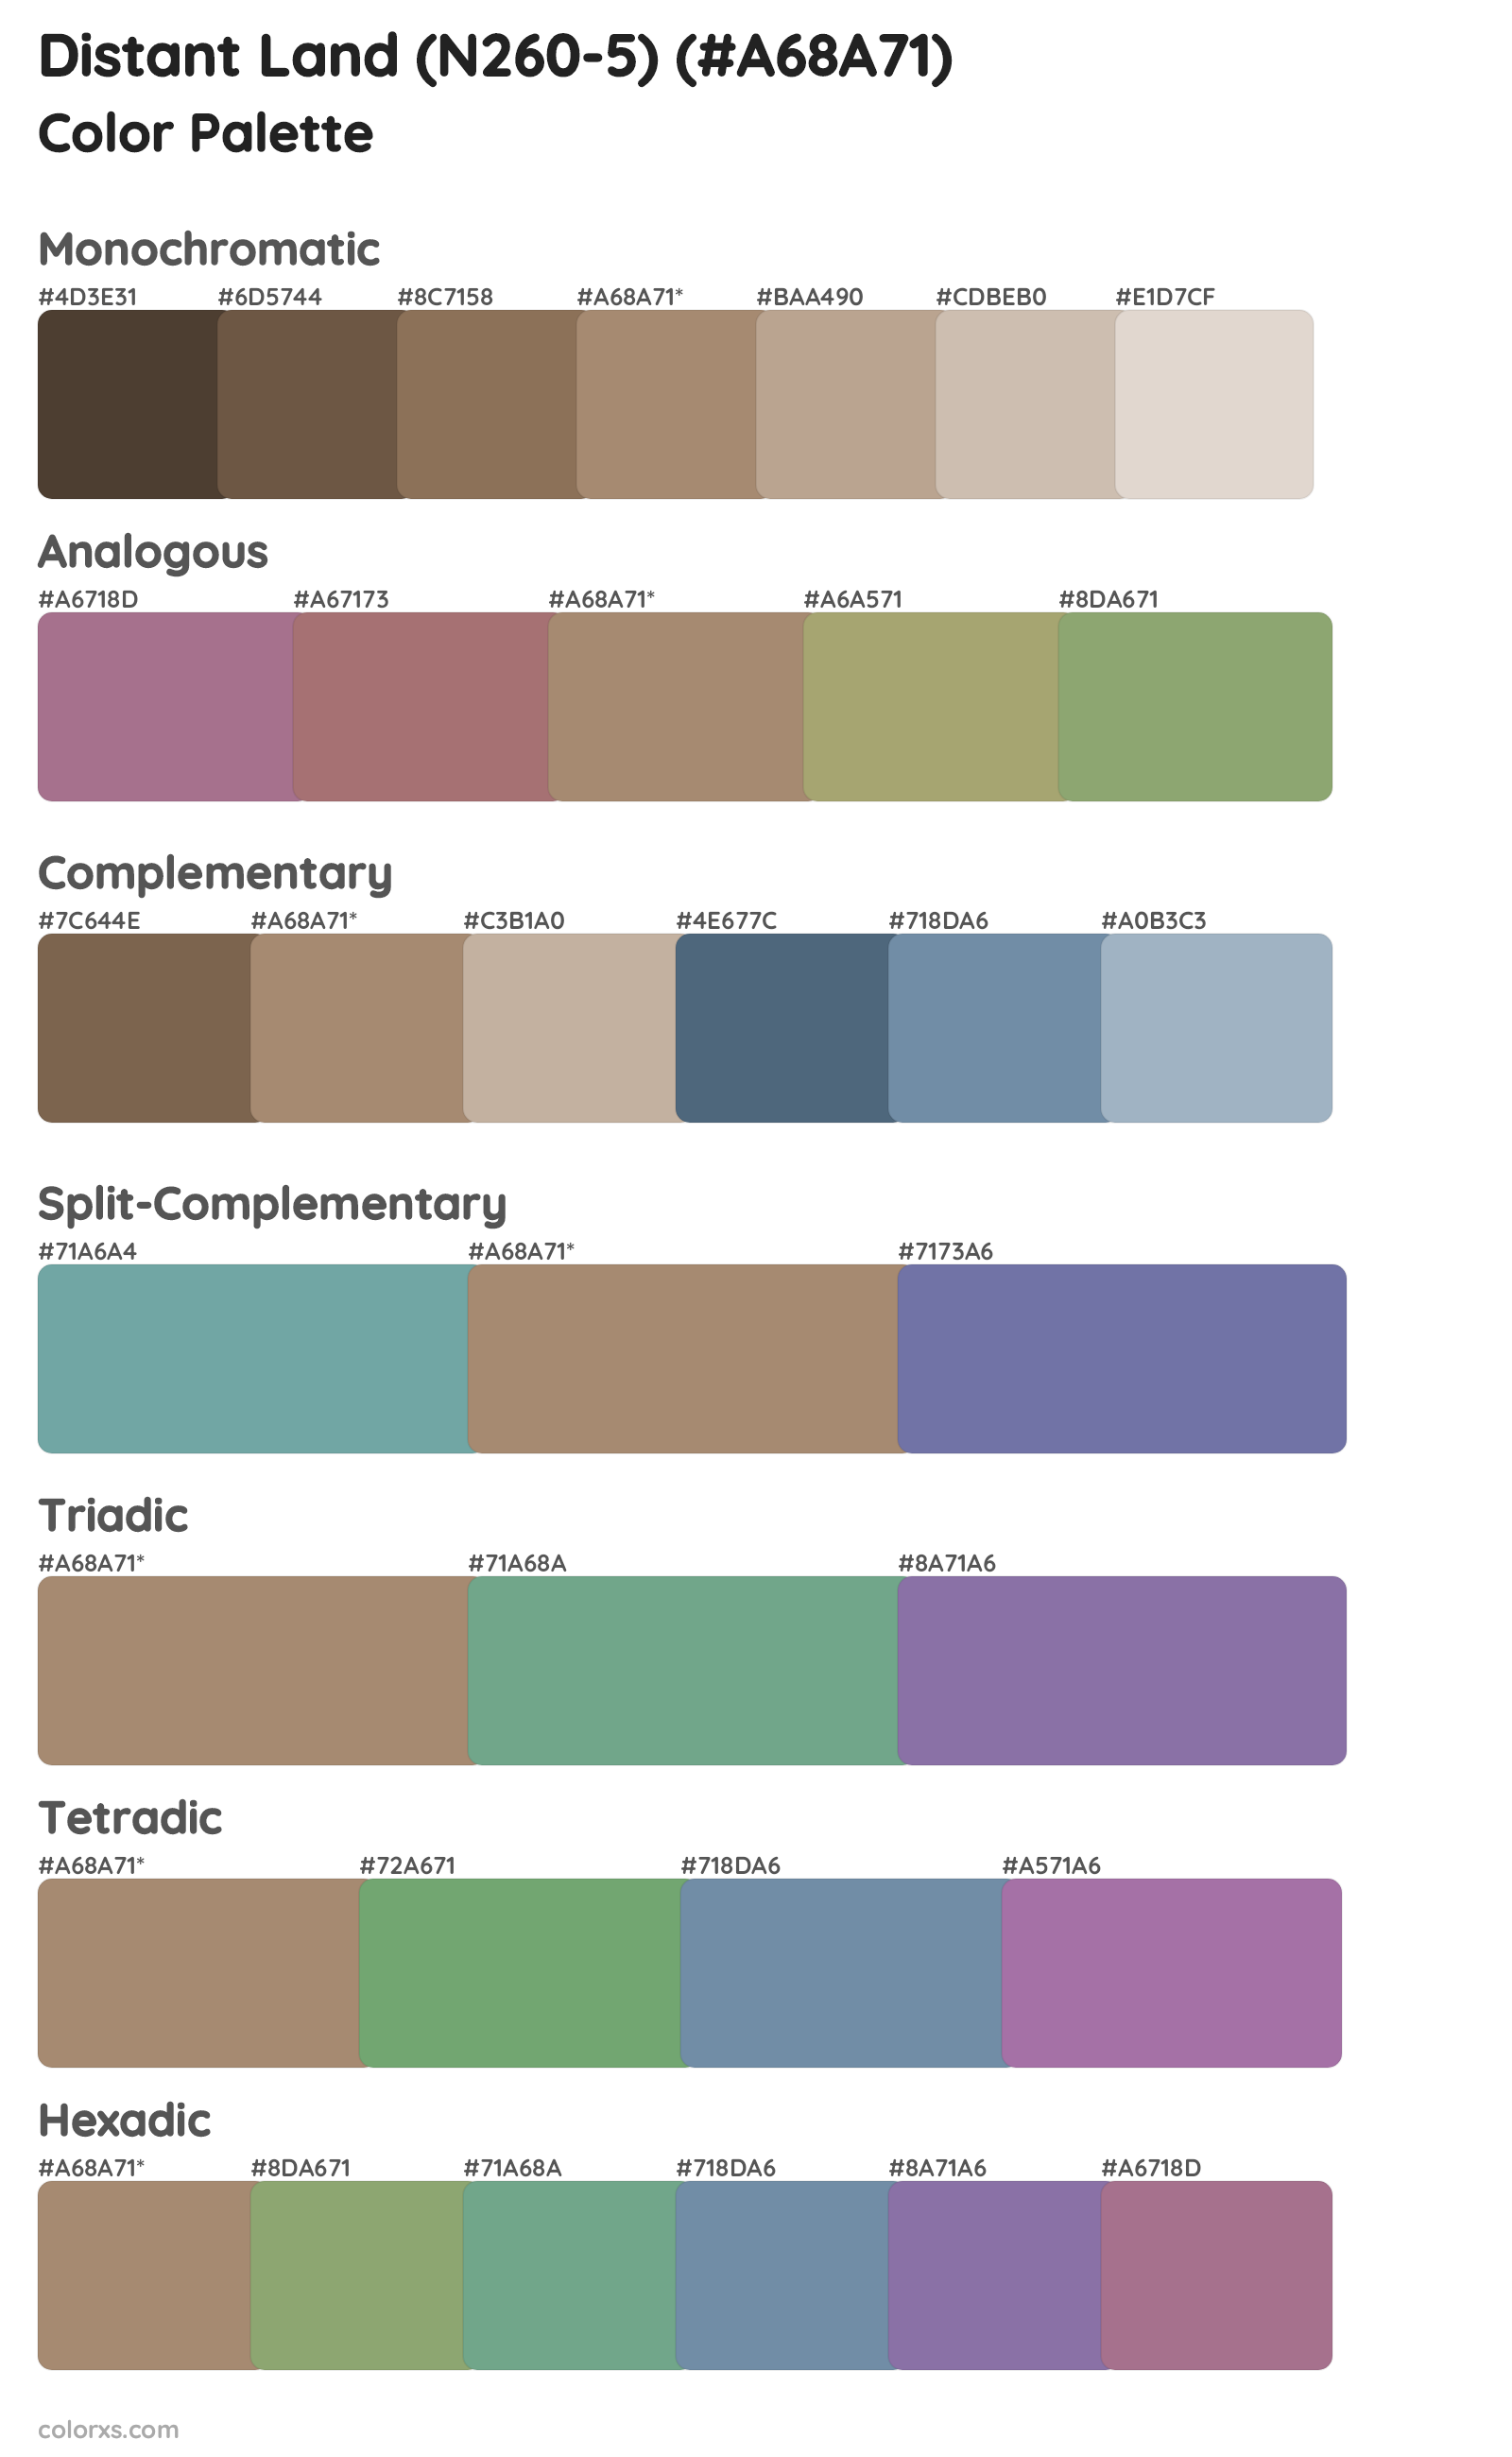 Distant Land (N260-5) Color Scheme Palettes